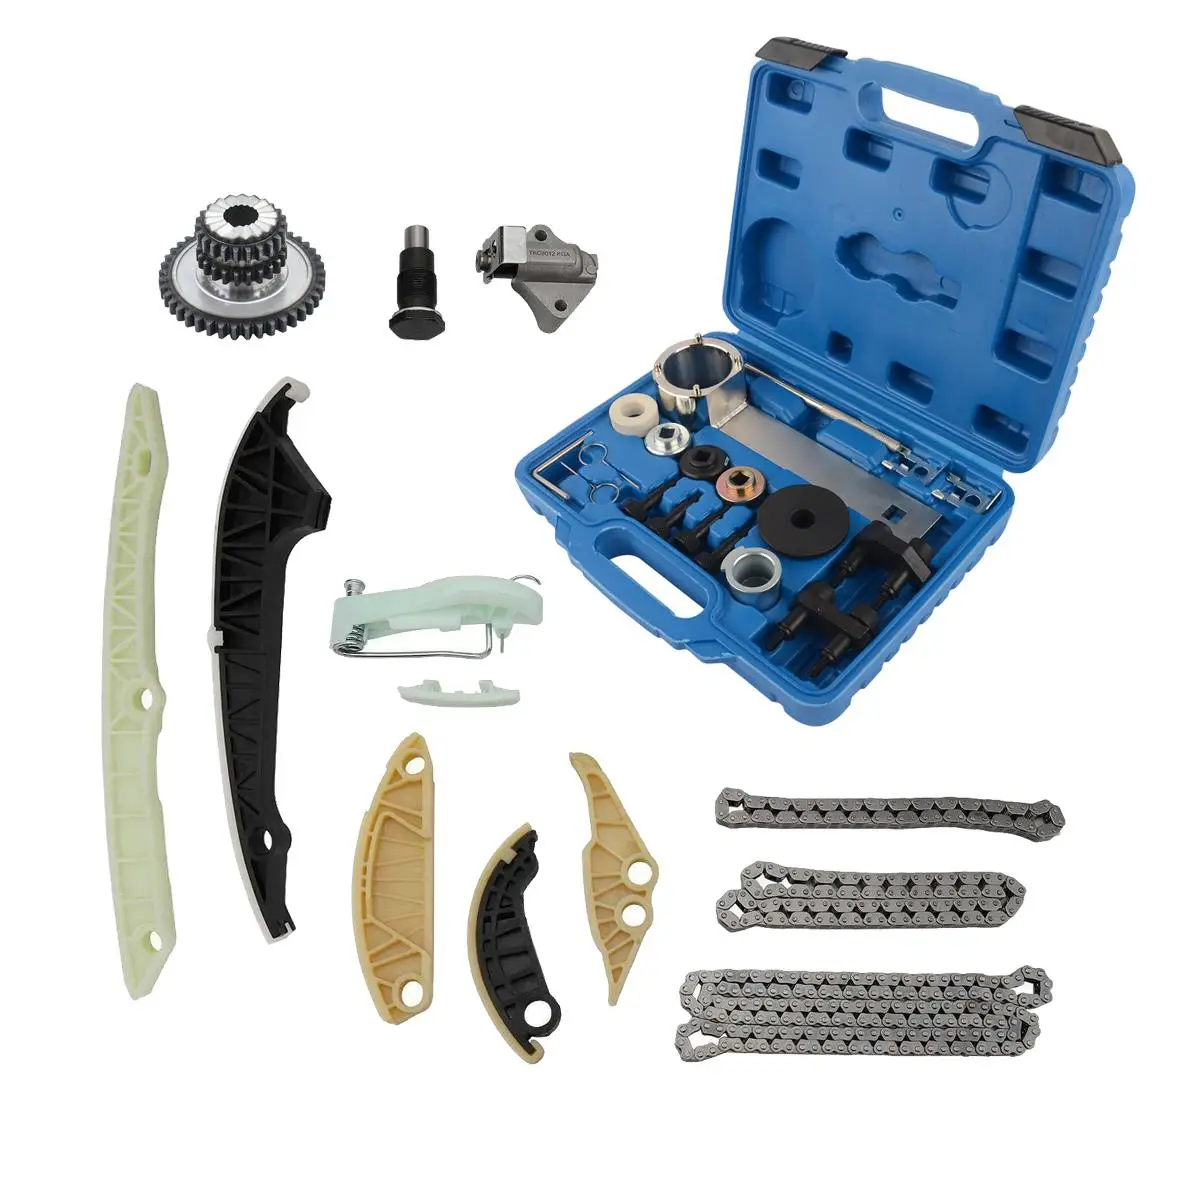 AP01 Timing Chain Repair Tool Kit For VW DOHC Volkswagen Jetta GTI Golf A4 Q5 1.8L 2.0L 06H109467L 06H109507N 06H109509L